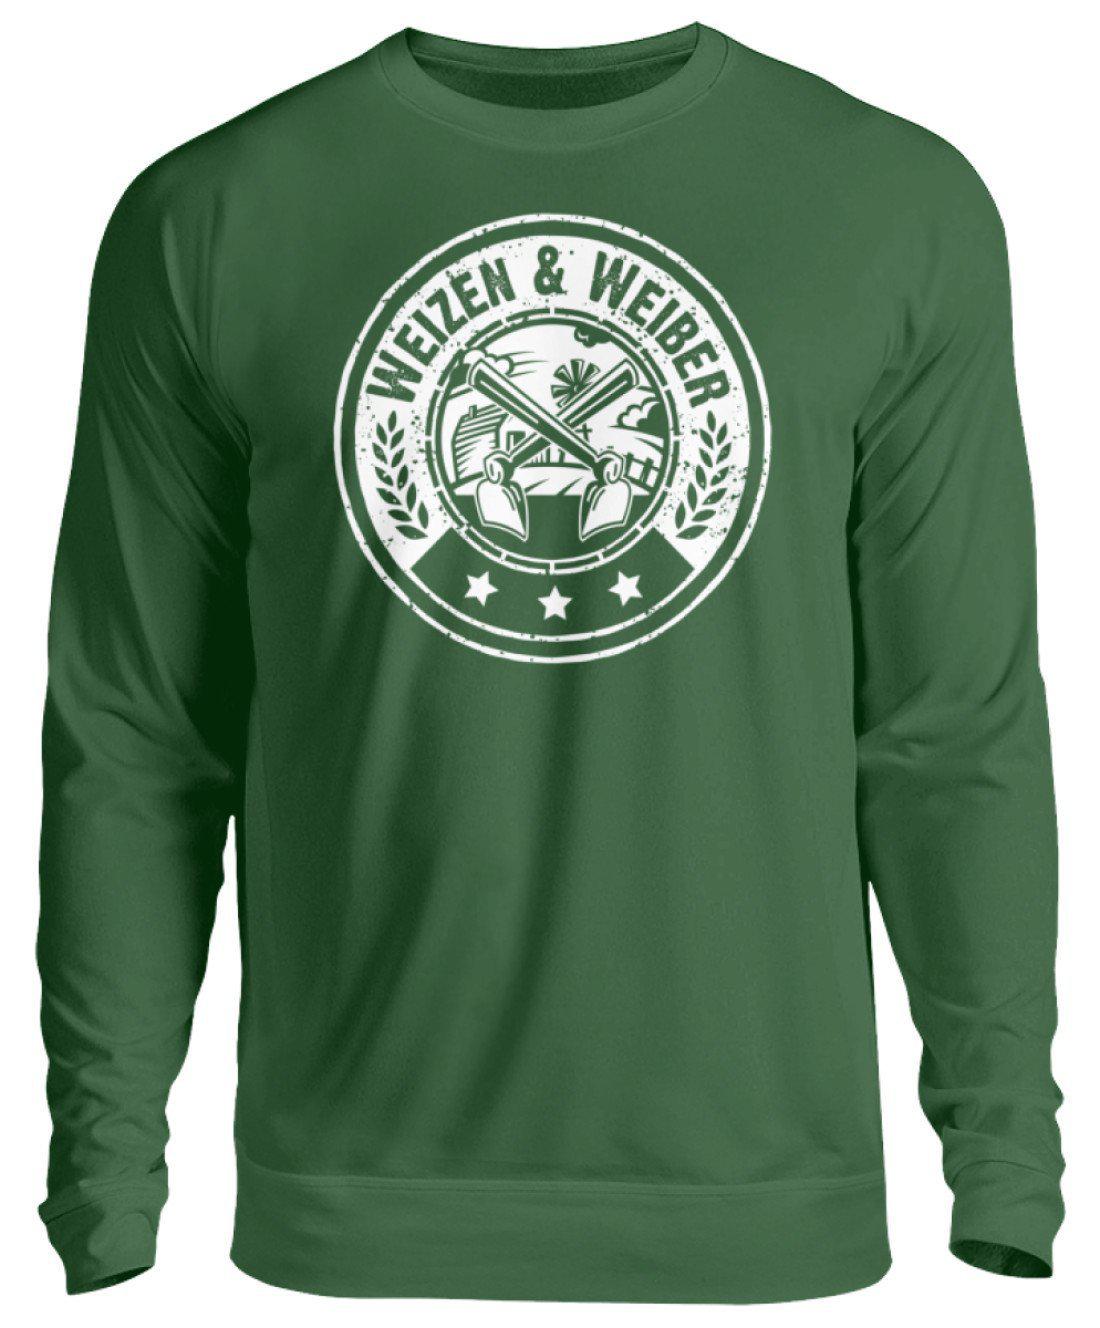 Weizen & Weiber · Unisex Sweatshirt Pullover-Unisex Sweatshirt-Bottle Green-S-Agrarstarz